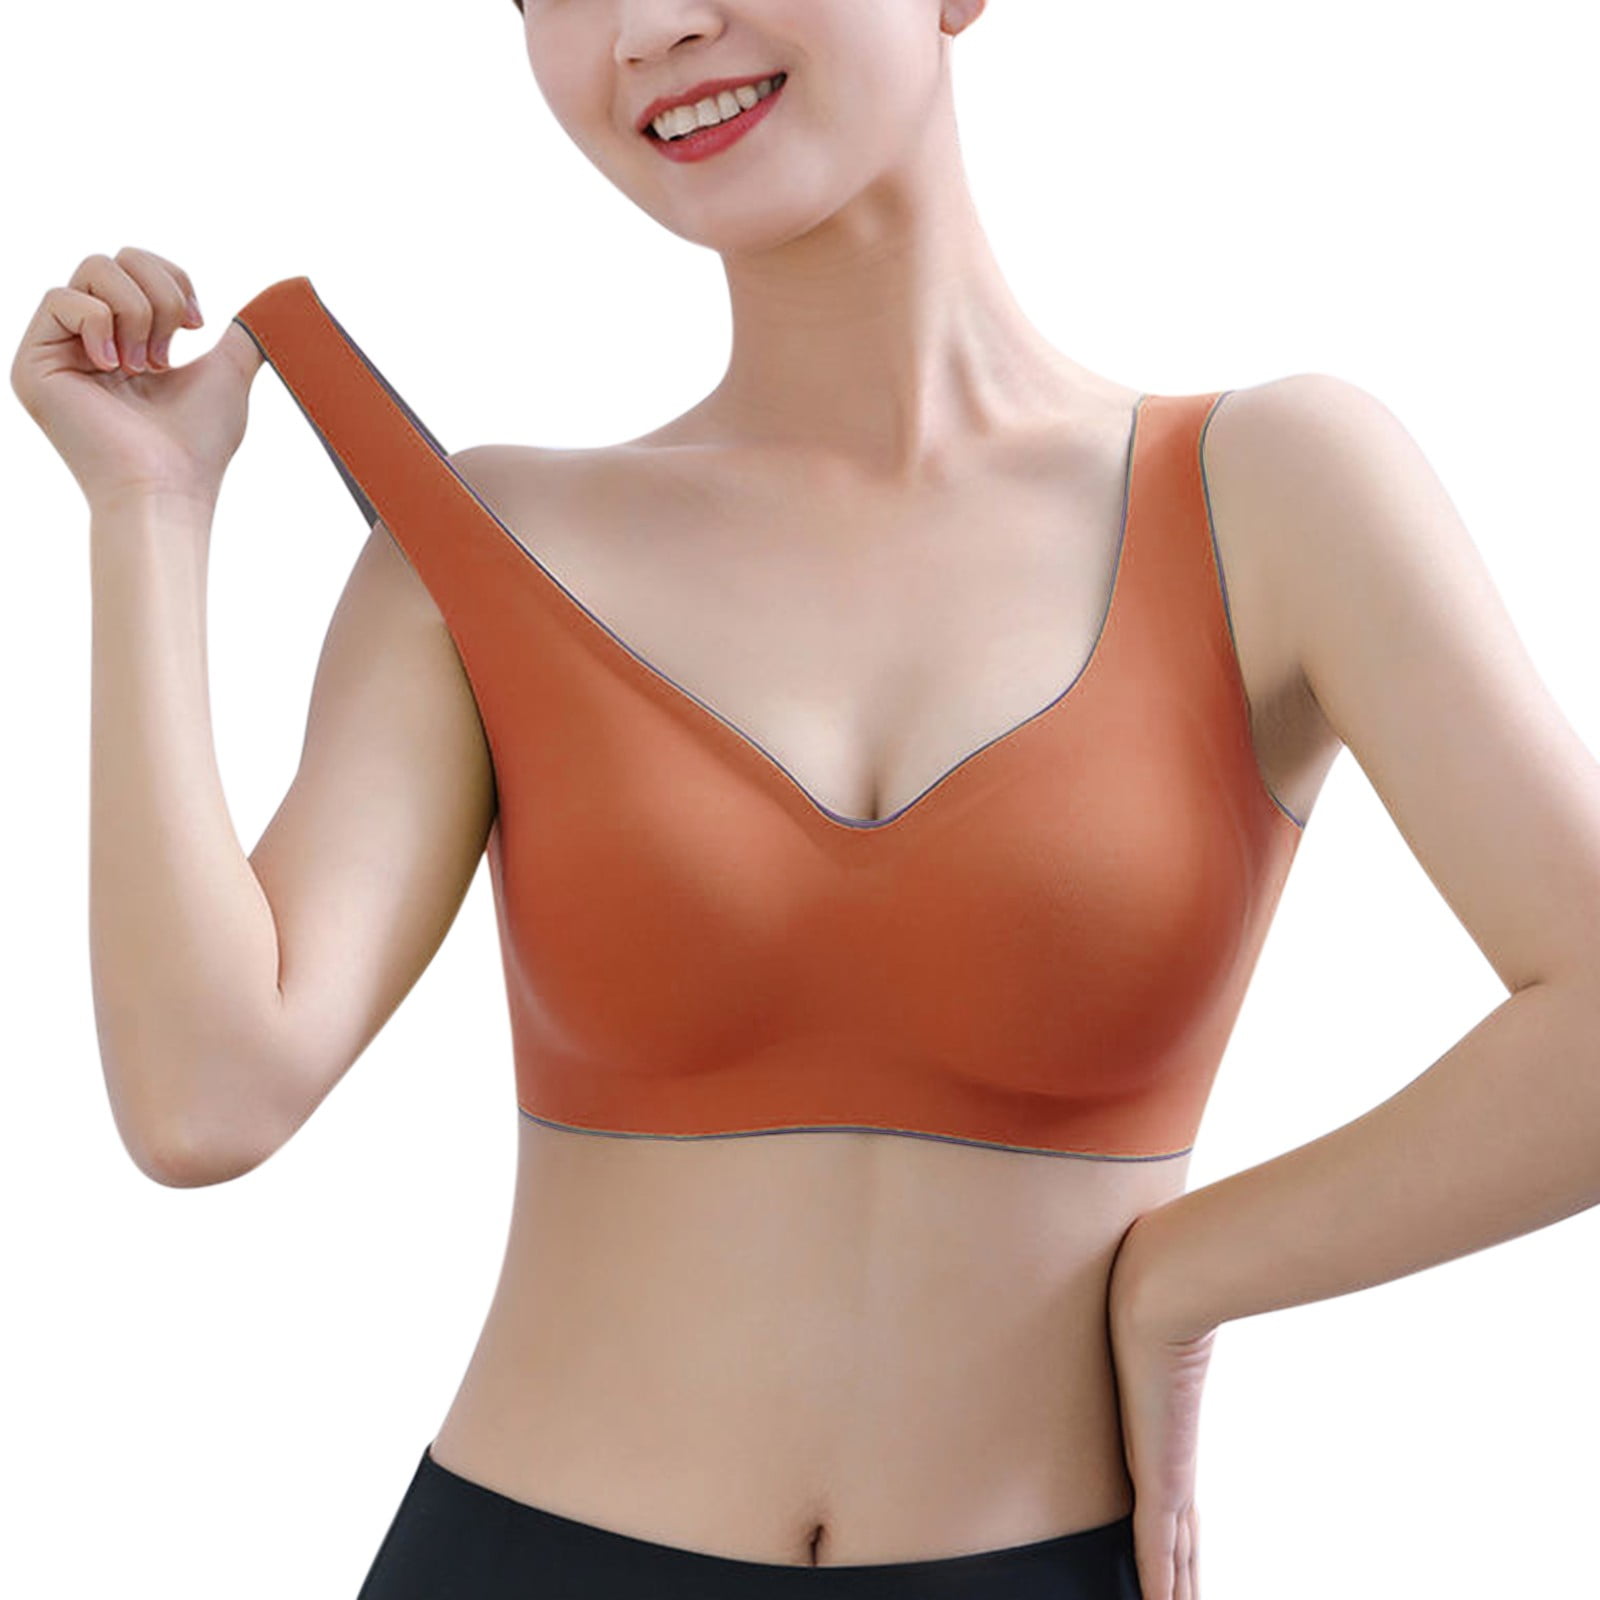 wendunide sports bras for women Womens Beautiful Back Underwear